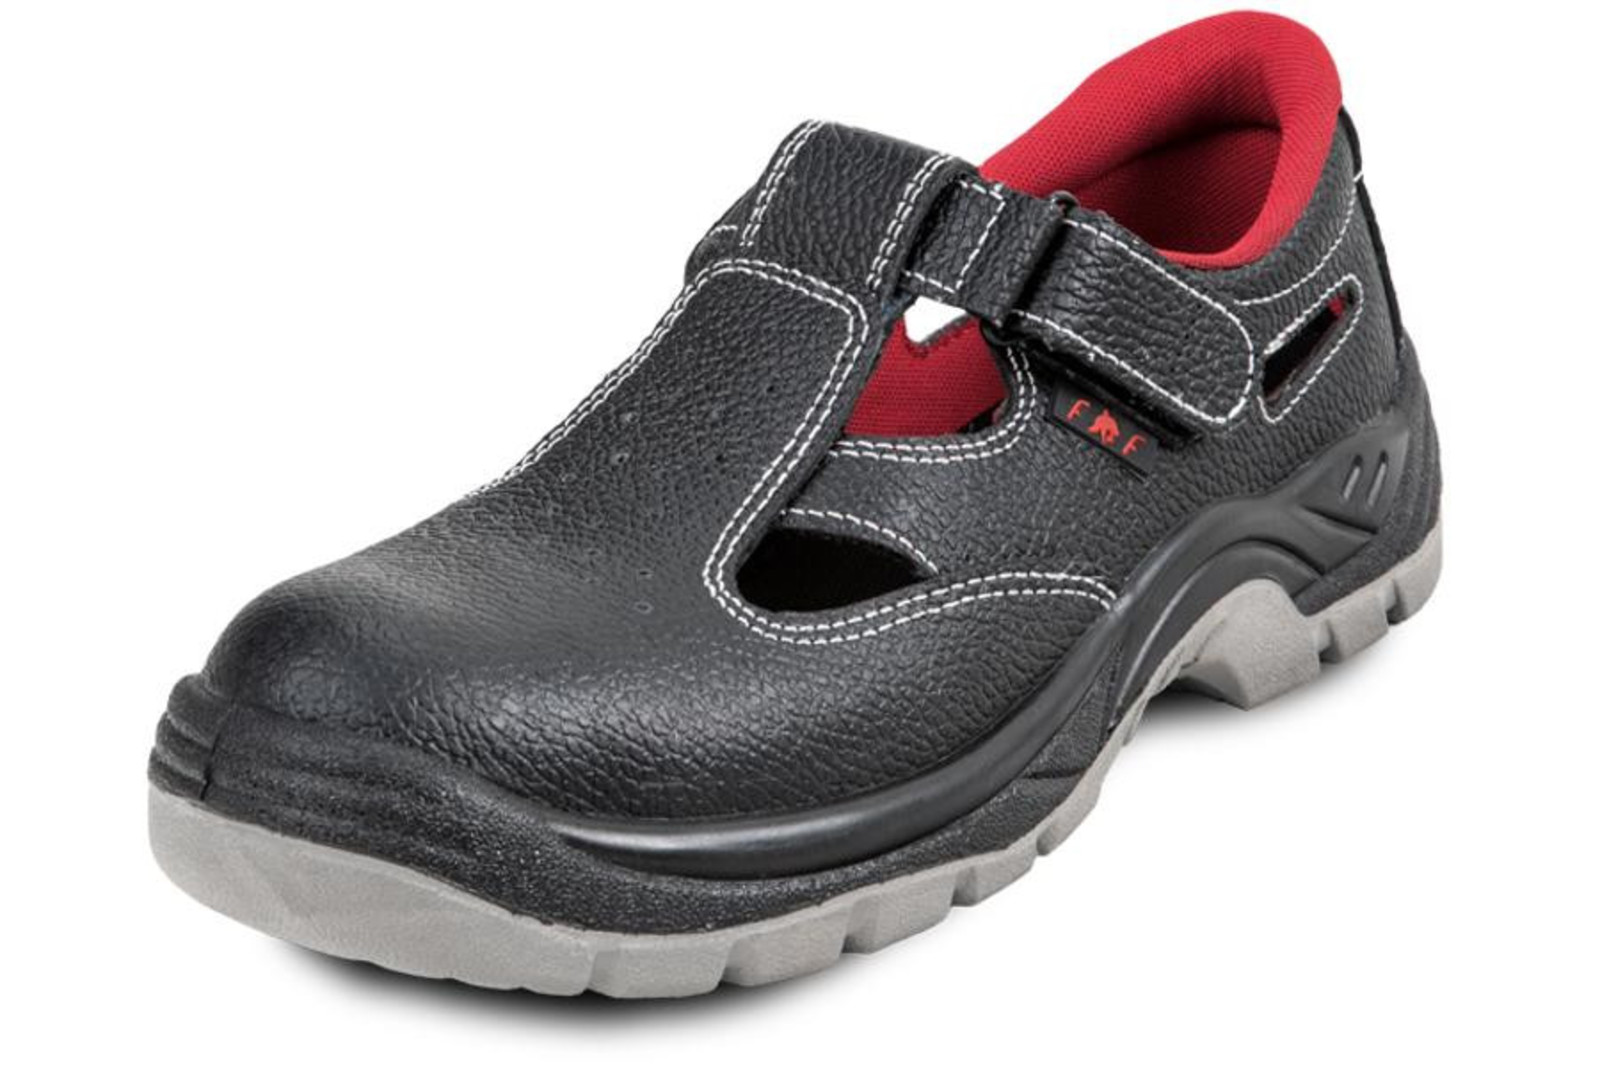 Pracovné sandále Bonn SC 01-002 O1 - veľkosť: 43, farba: čierna